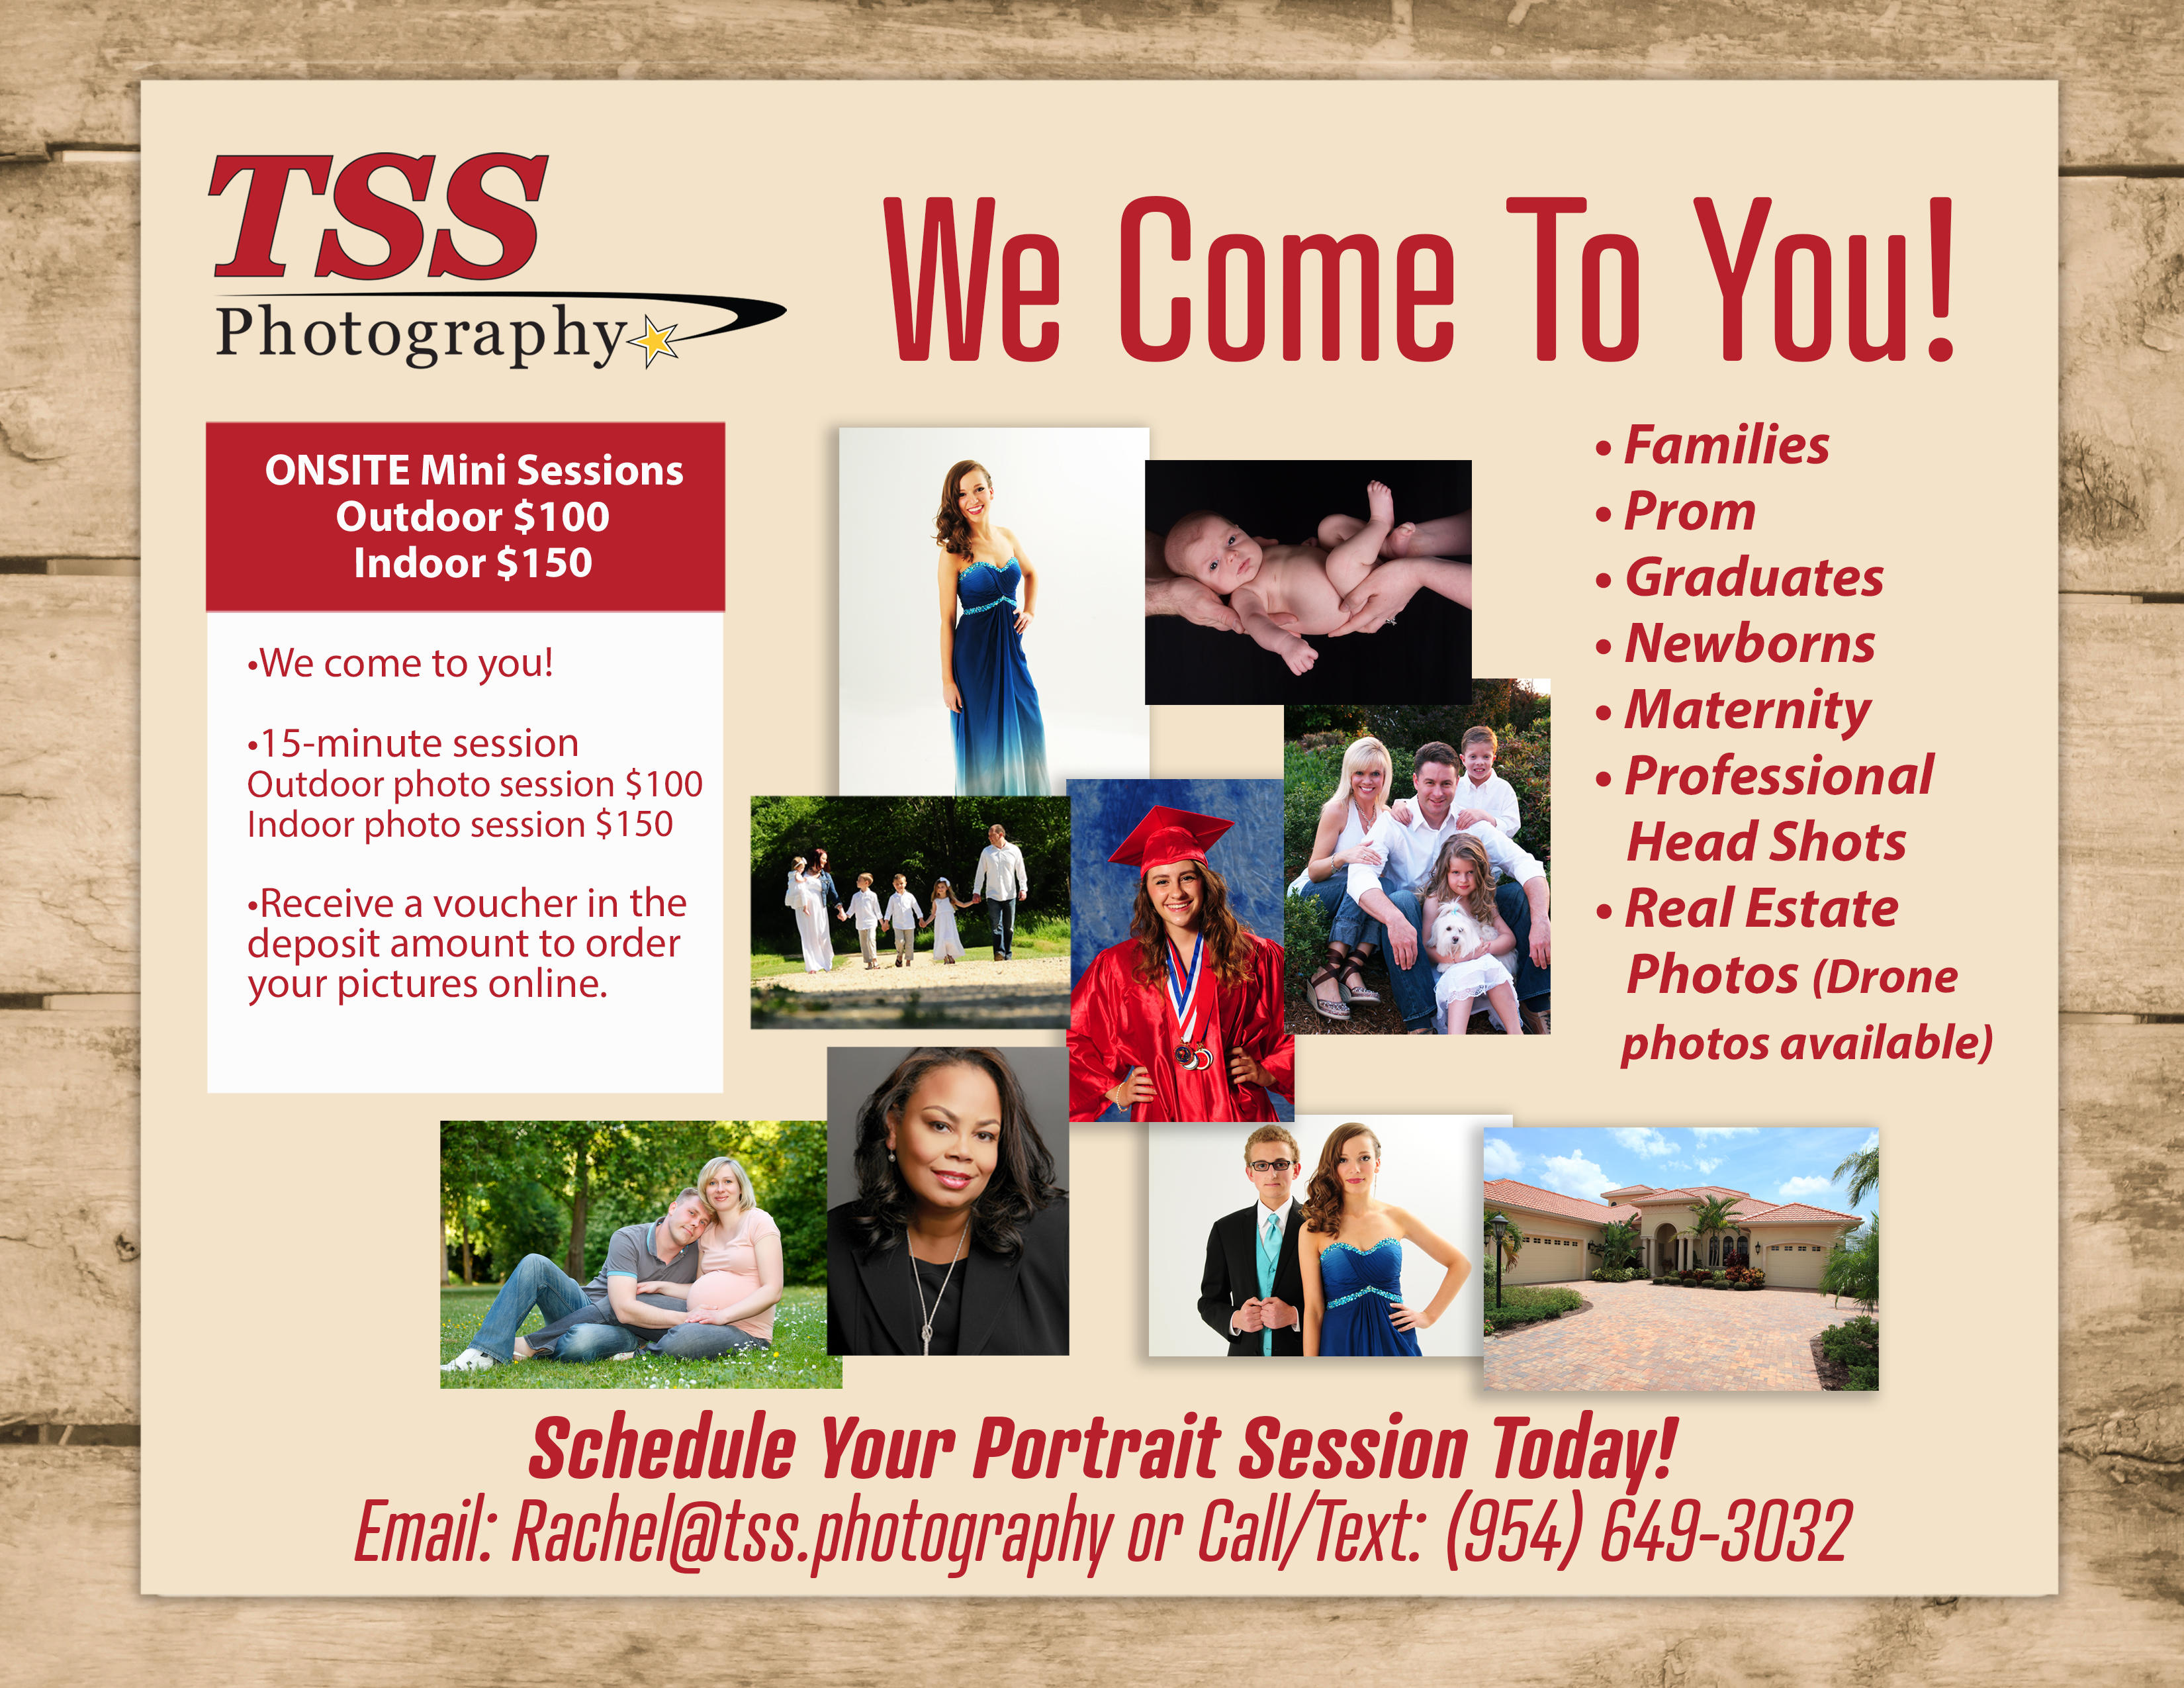 TSS Photography & Awards Photo